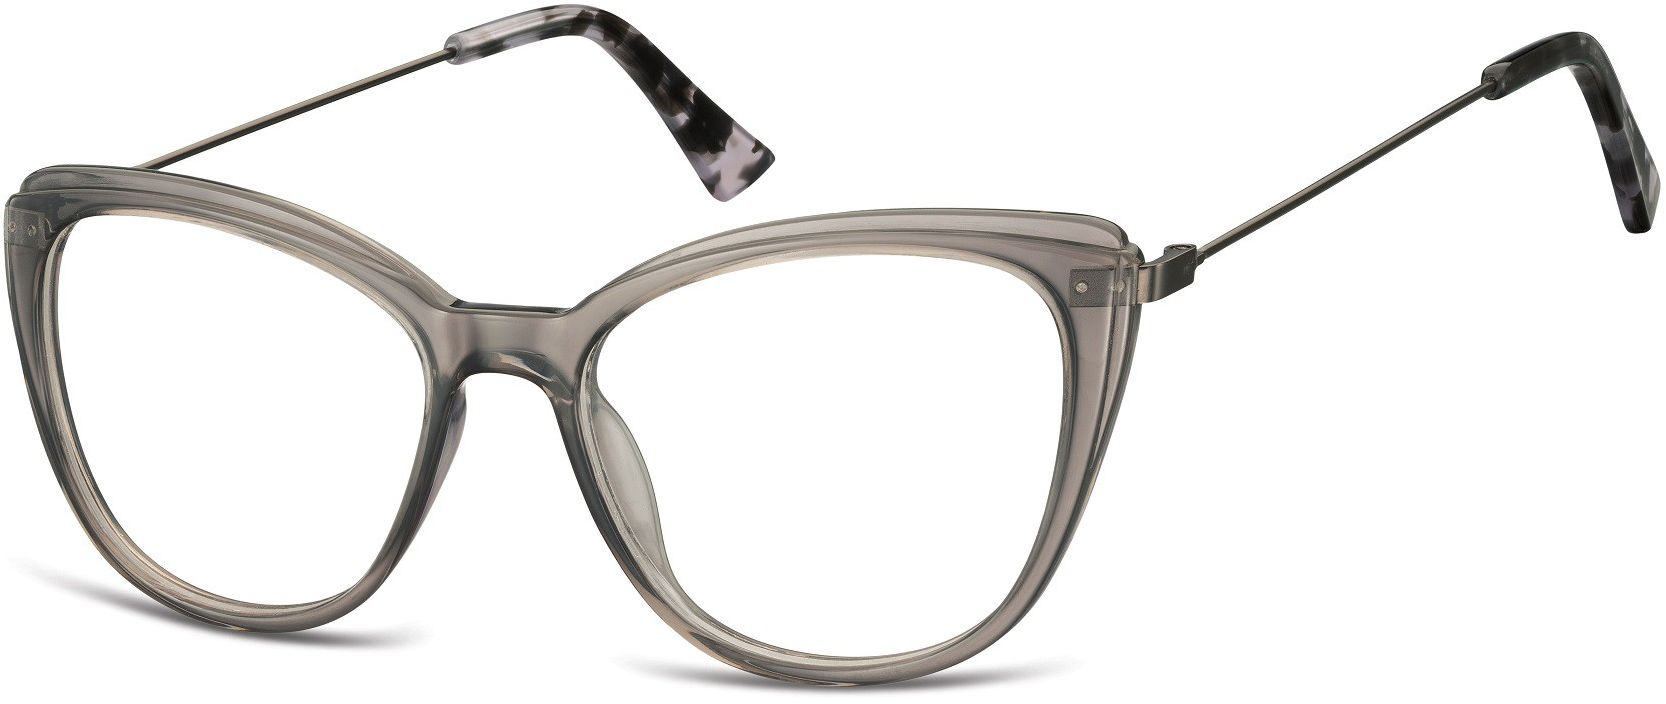 Sunoptic Oprawki korekcyjne okulary Kocie Oczy zerówki damskie CP121A szare